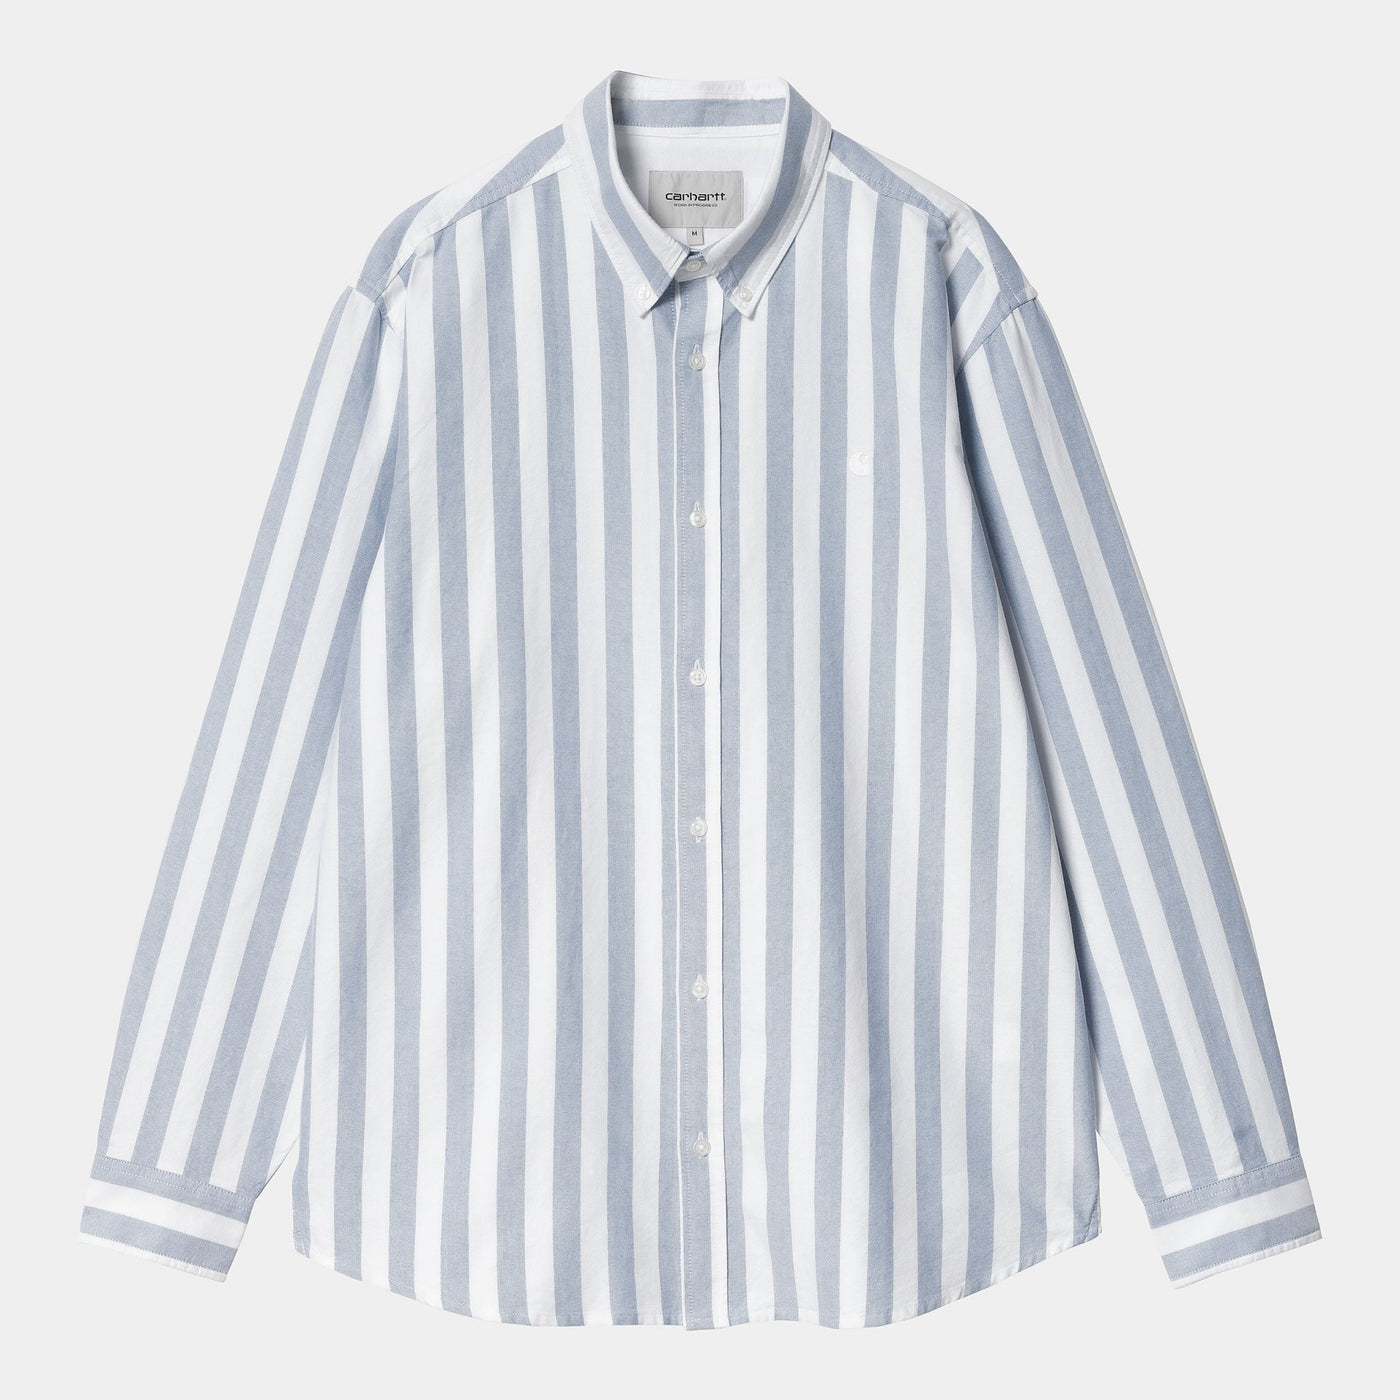 Carhartt - La chemise à rayures 'Dillion' bleu - Lothaire